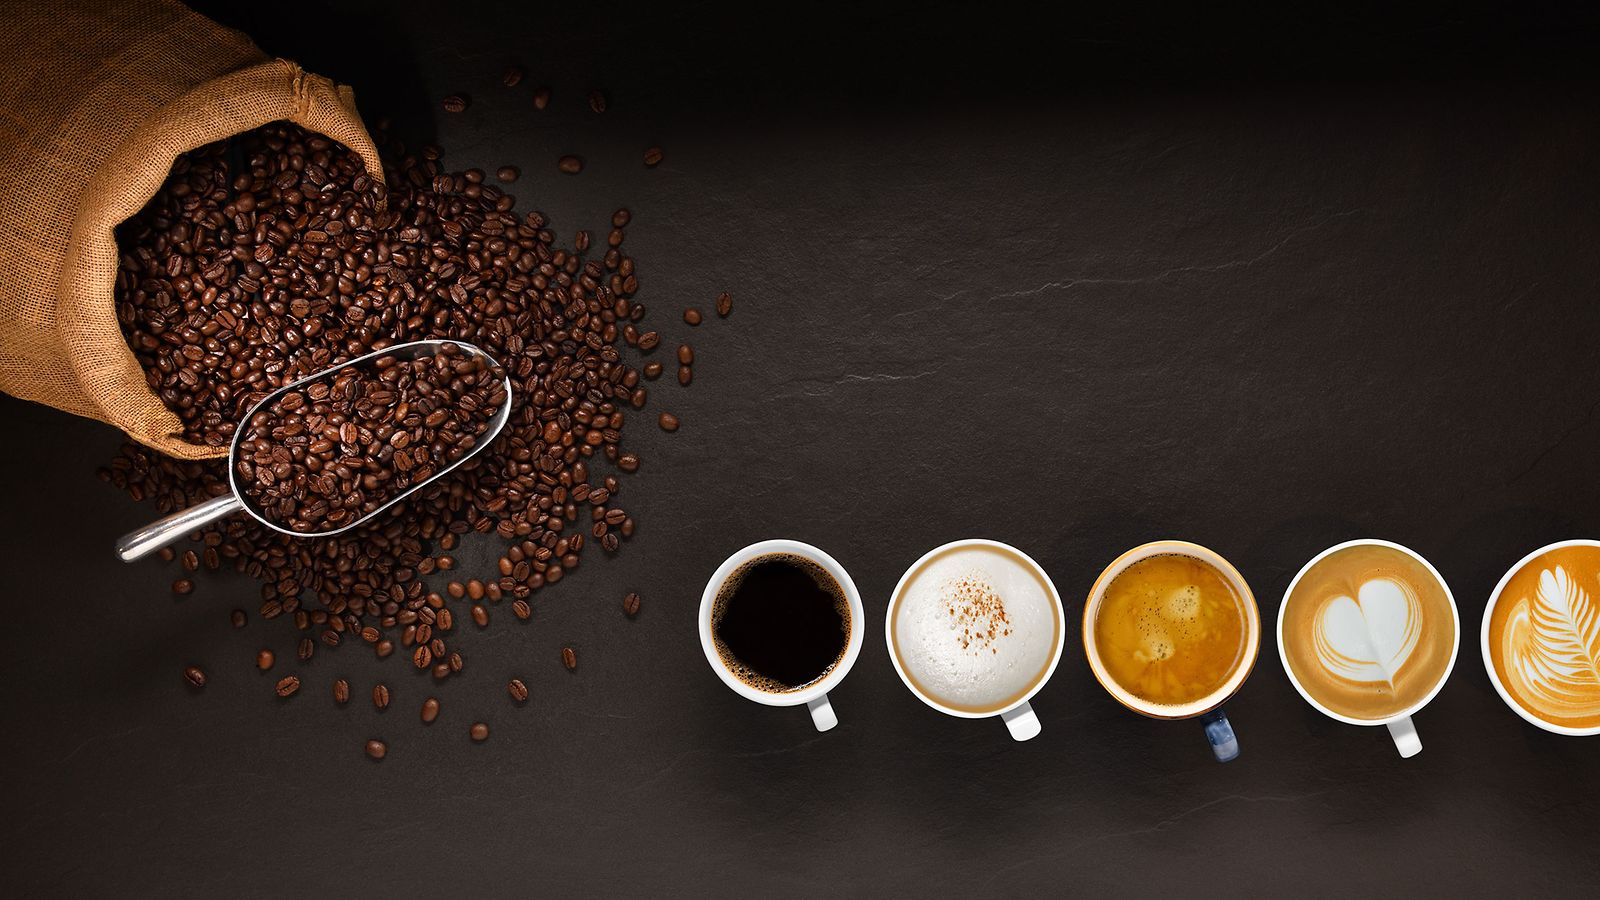 Köpguide för kaffebryggare: Kaffebönor och kaffekoppar.